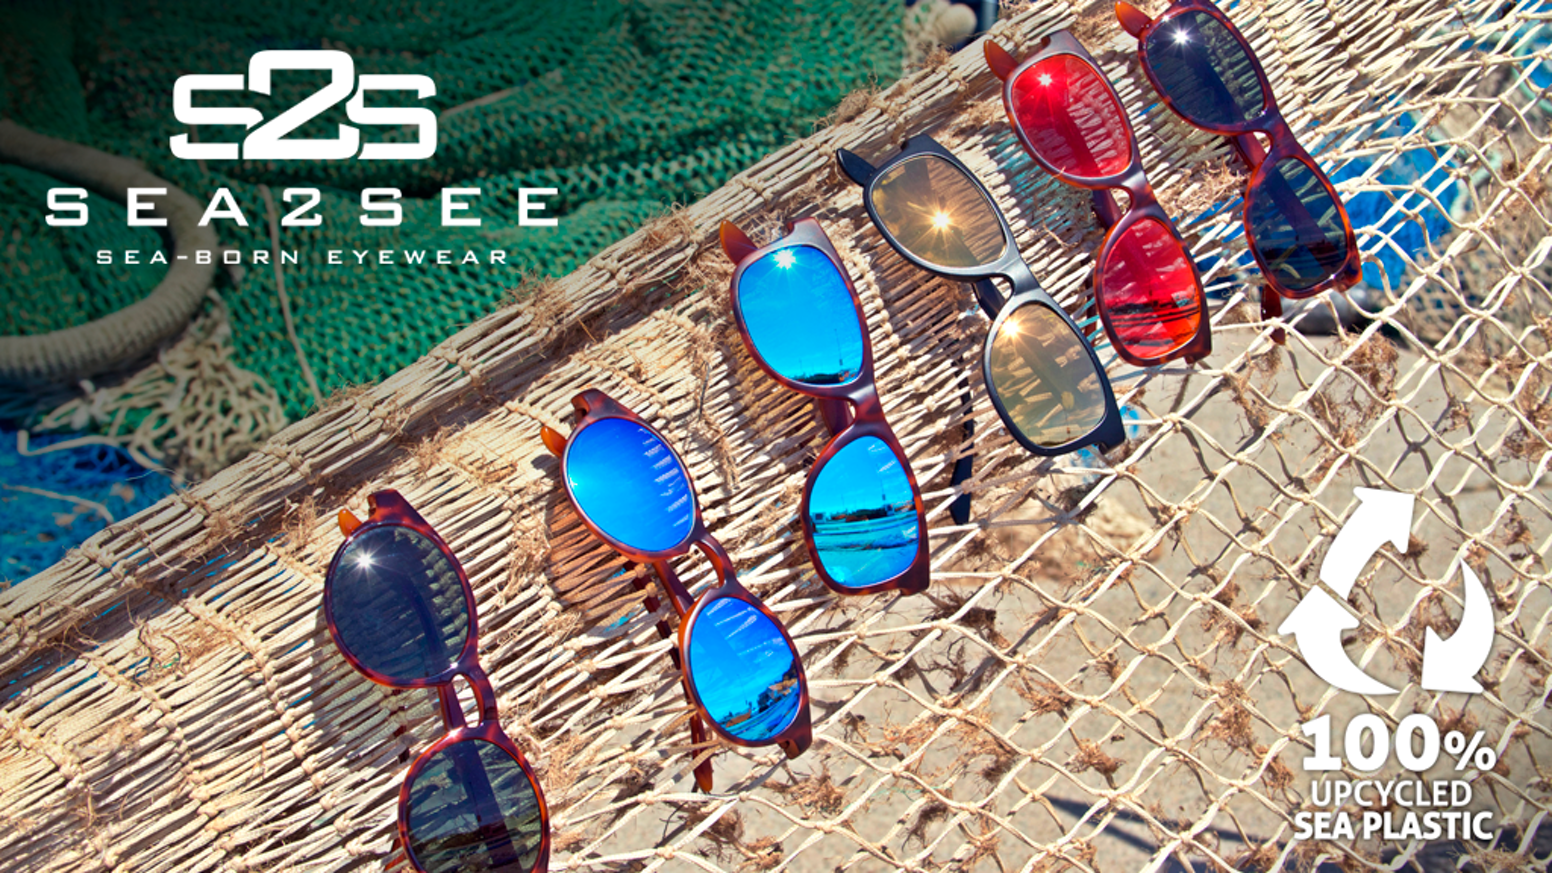 Sea2see Sunglasses 